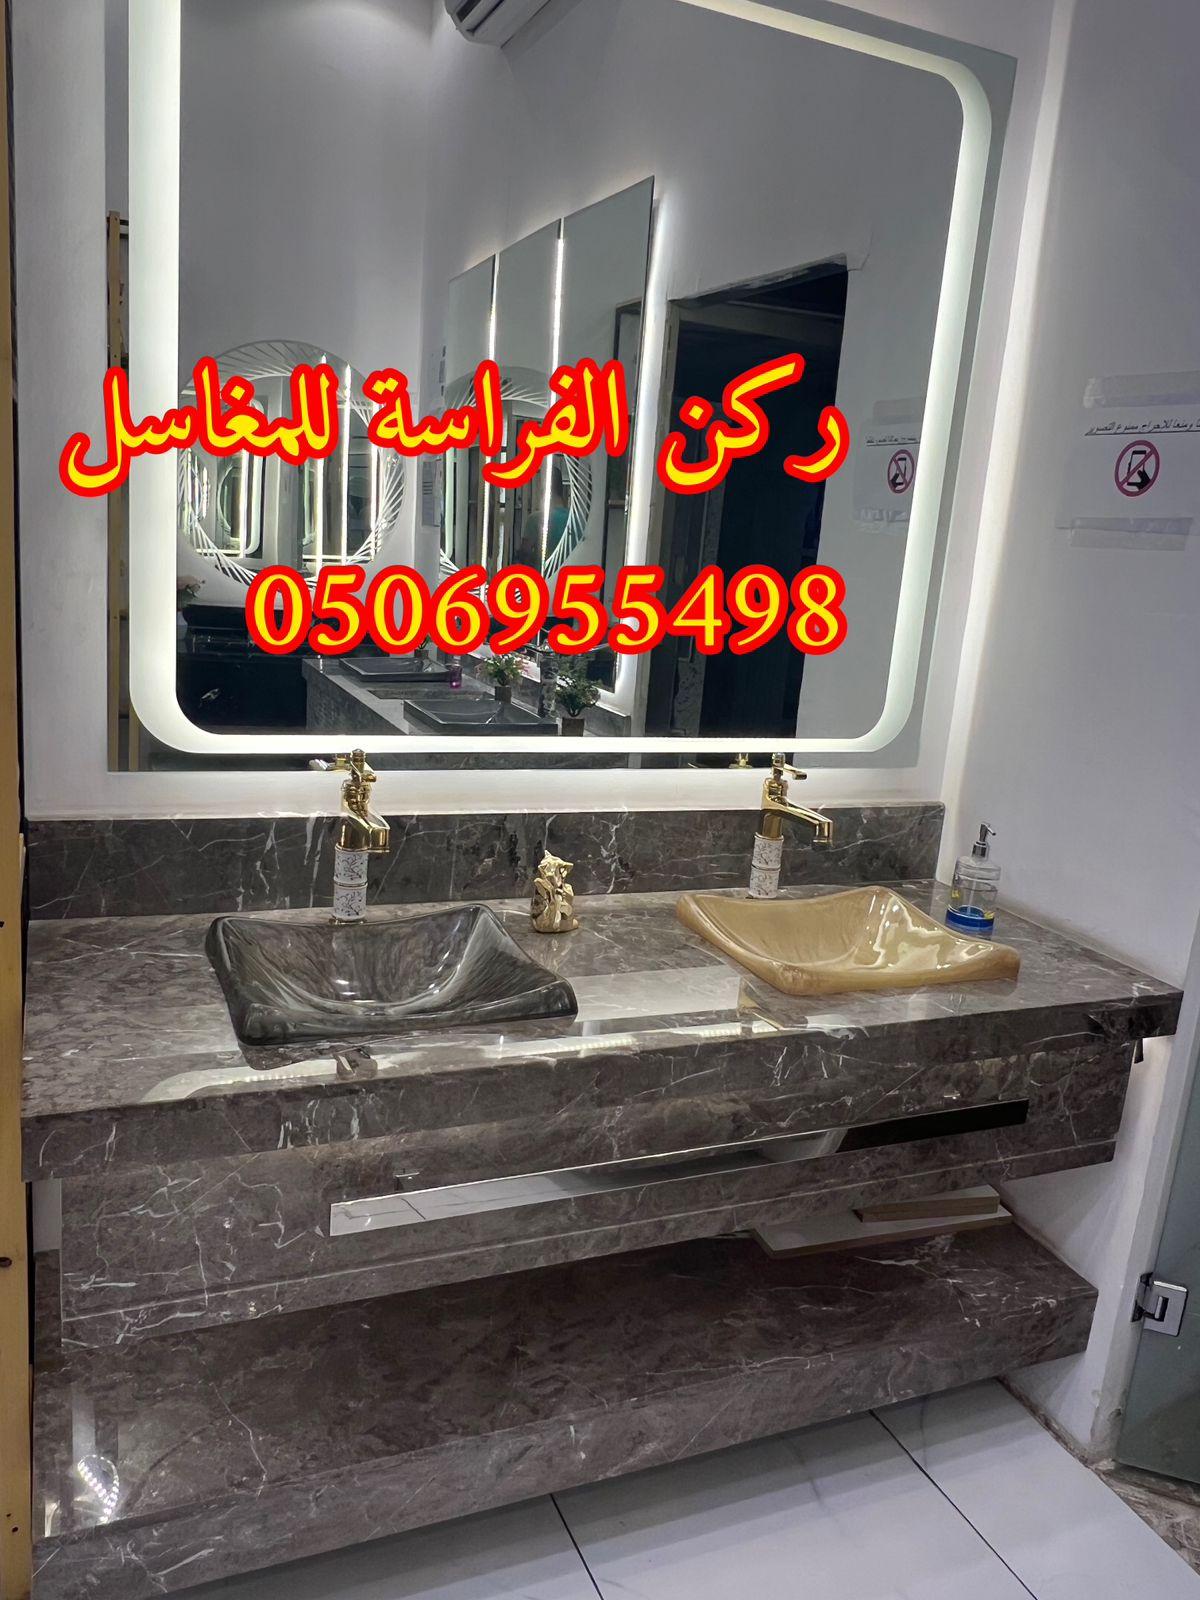 الرياض - اشكال مغاسل رخام طبيعي وصناعي في الرياض,0506955498 469595347